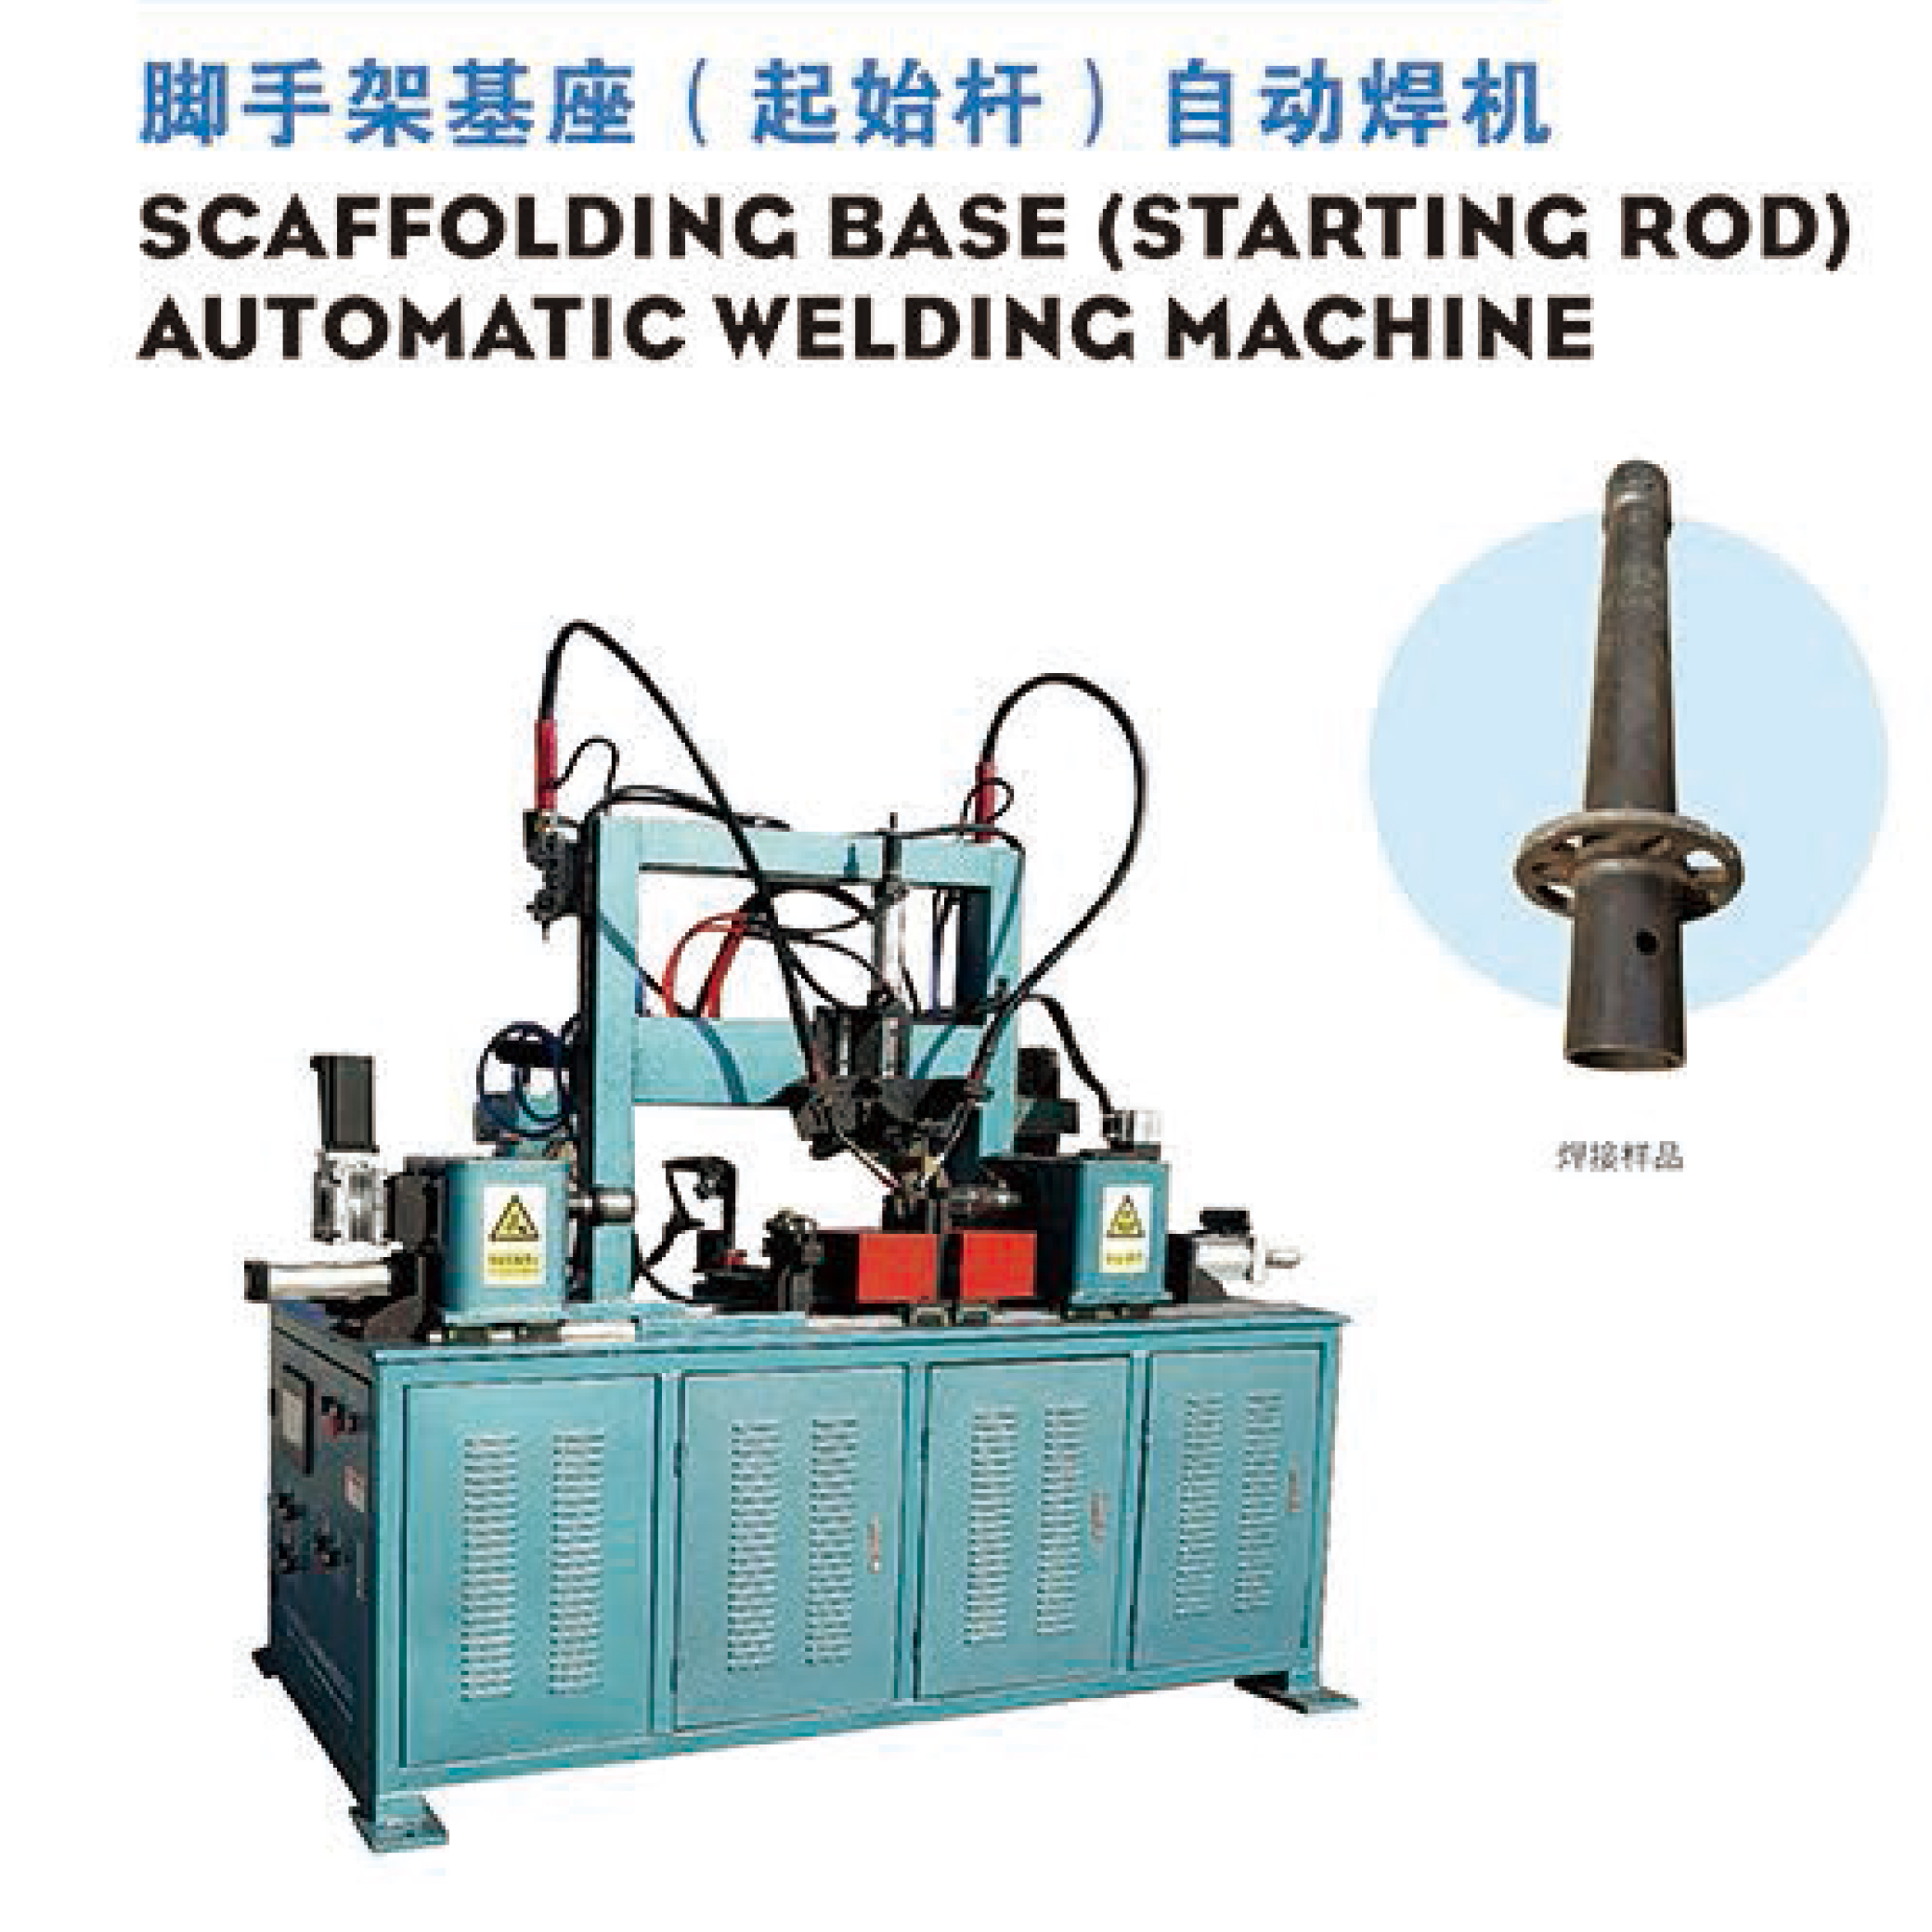 底托自动焊机 全自动钻孔机 立式环缝自动焊机 瑞邦厂家生产